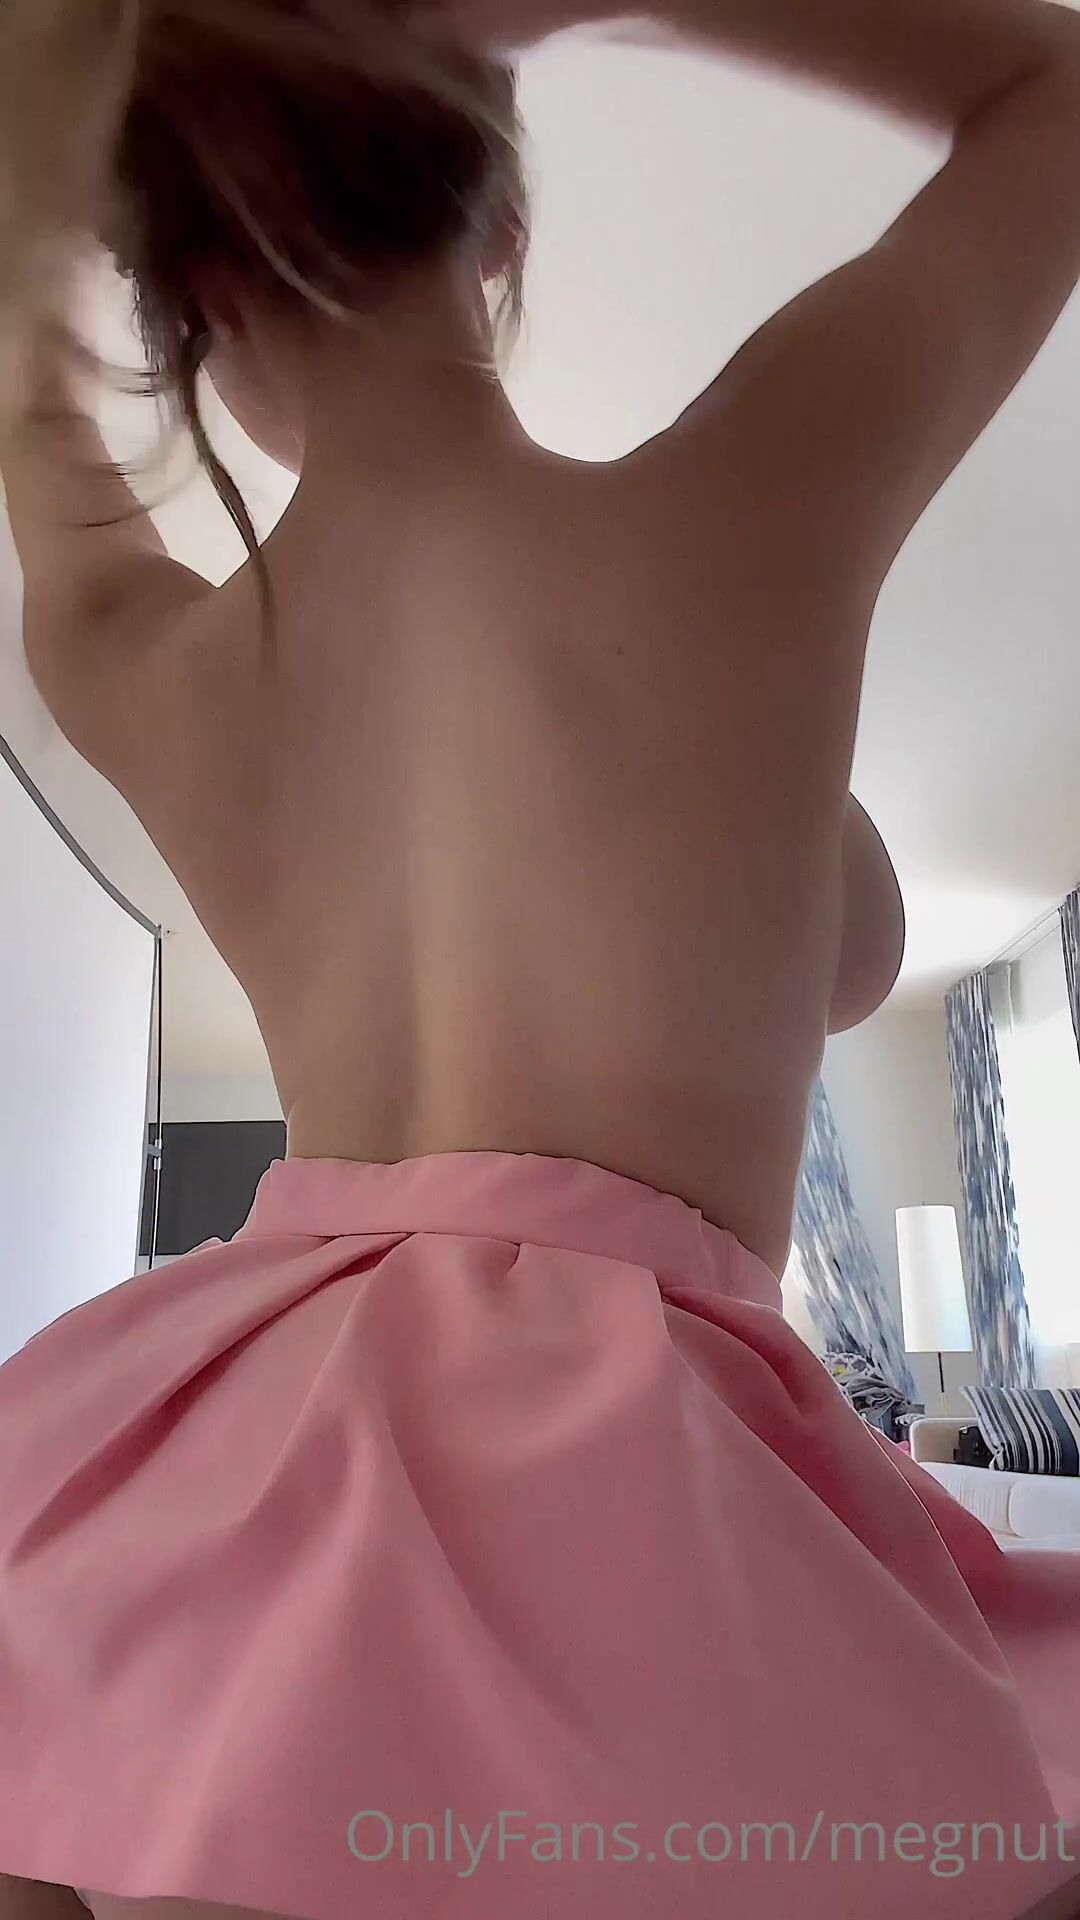 Megnutt pink skirt